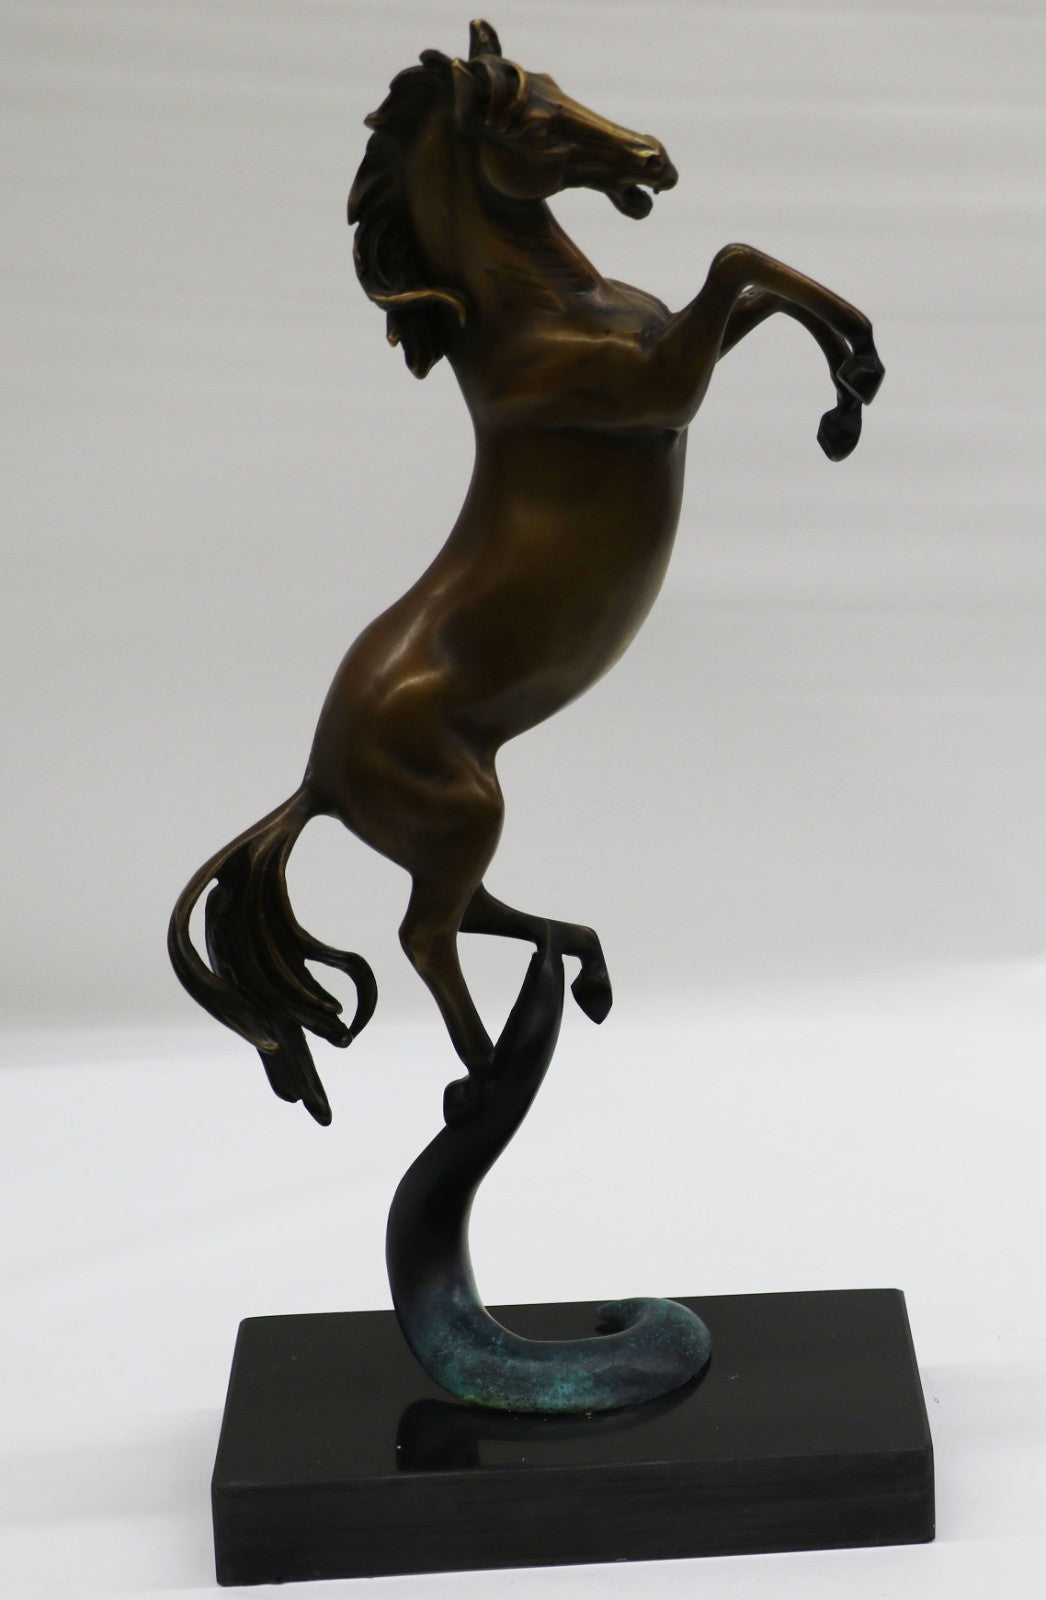 Horse Collectibles Metal Rearing Bronze Wild Sculptures Pony Art Equine Deal